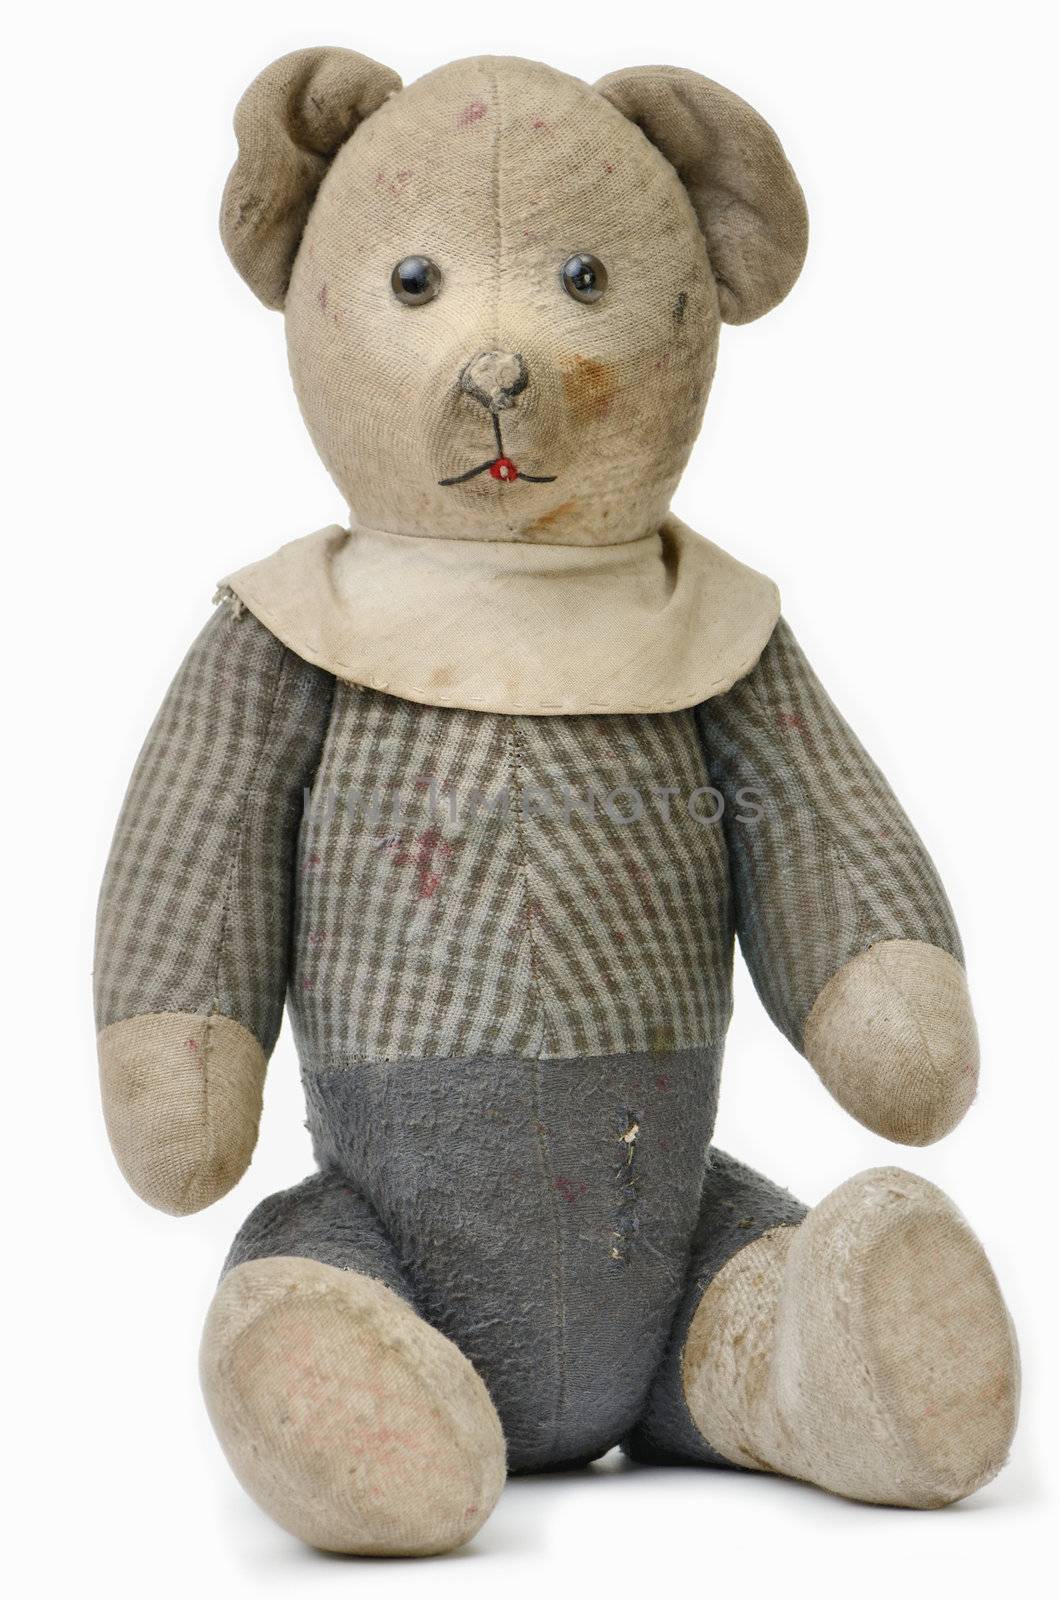 Old Teddy Bear by styf22